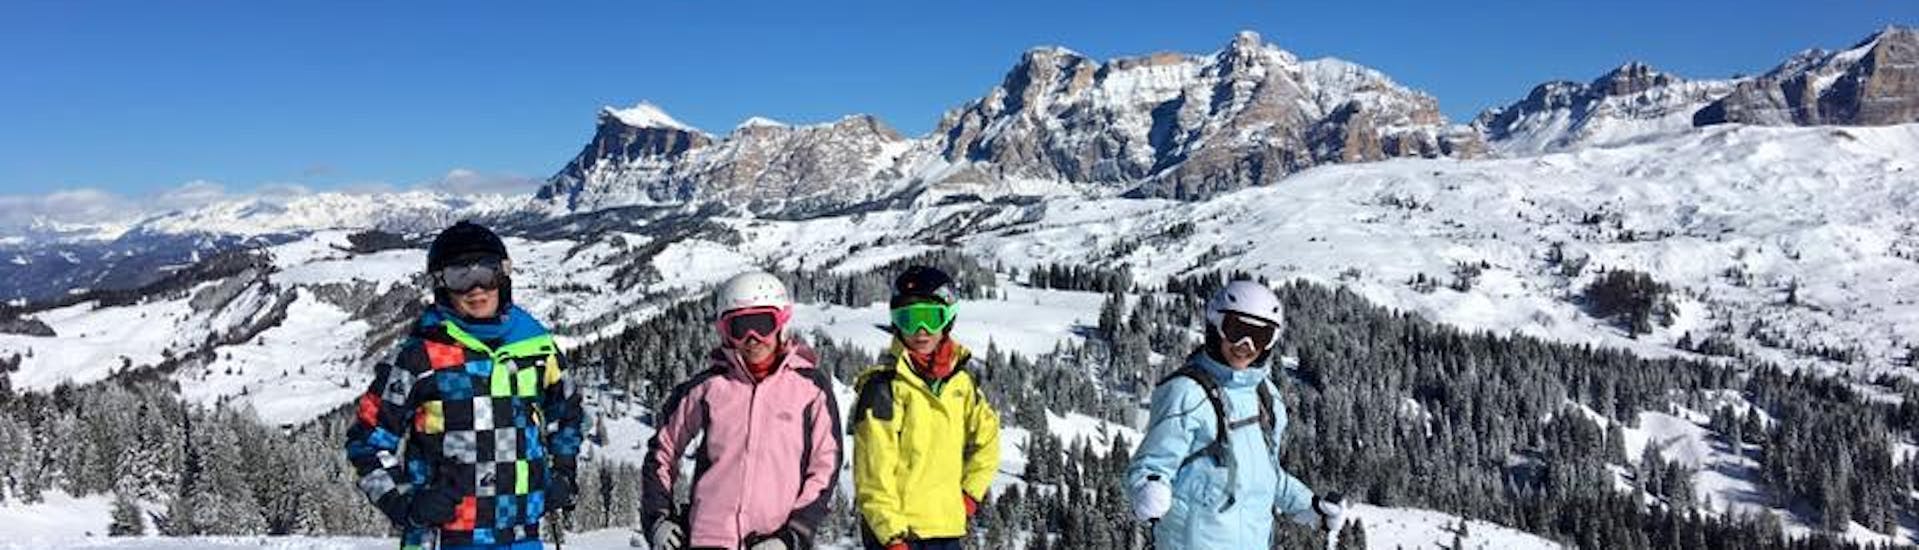 Skilessen voor Kinderen (4-12 jaar) voor Alle Niveaus - Hele Dag.